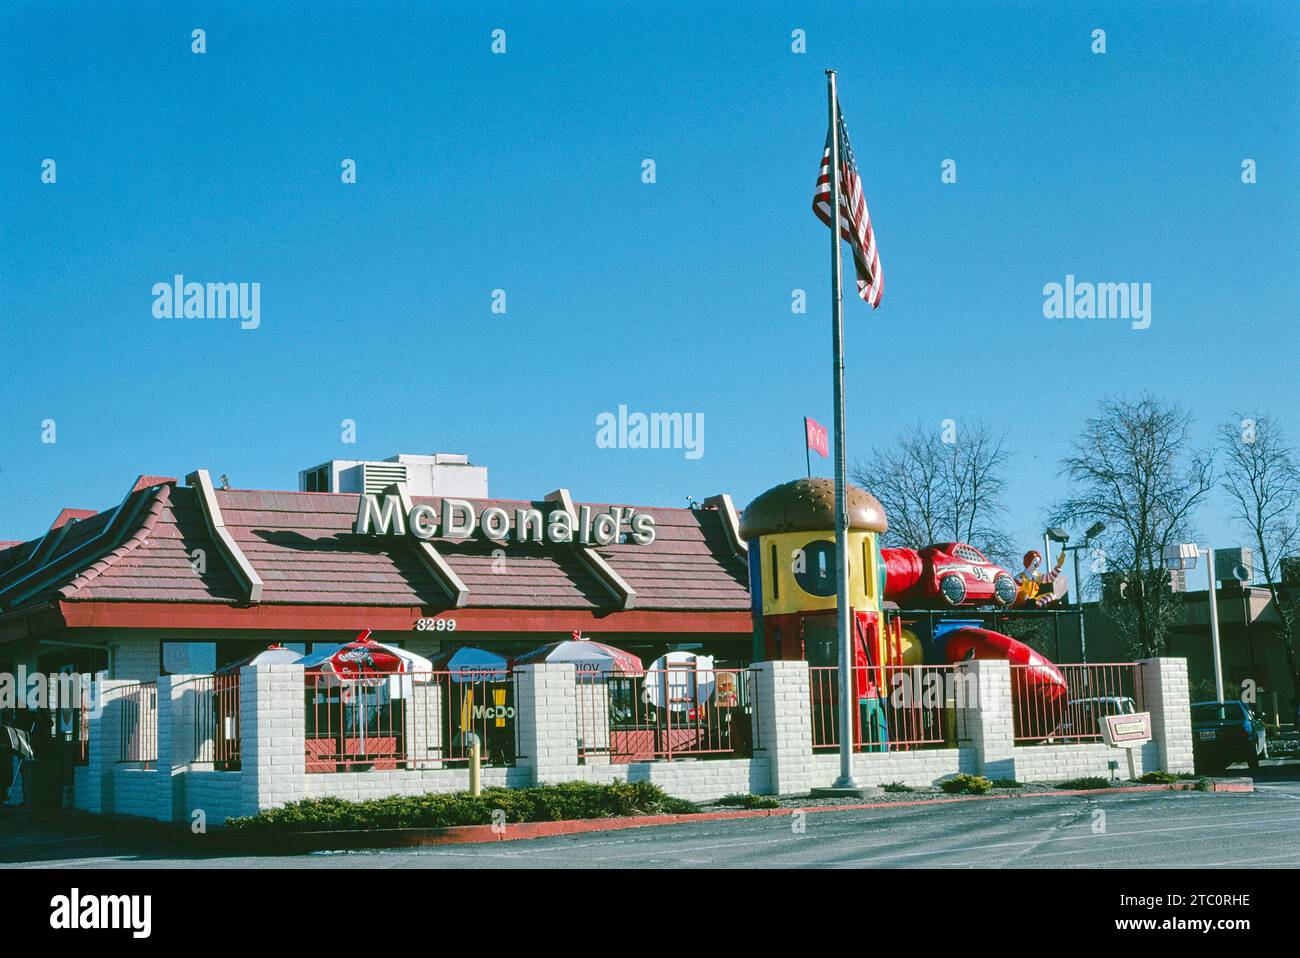 Restaurant de restauration rapide McDonald's, Santa Fe, Nouveau-Mexique, États-Unis, John Margolies Roadside America Photograph Archive, Banque D'Images